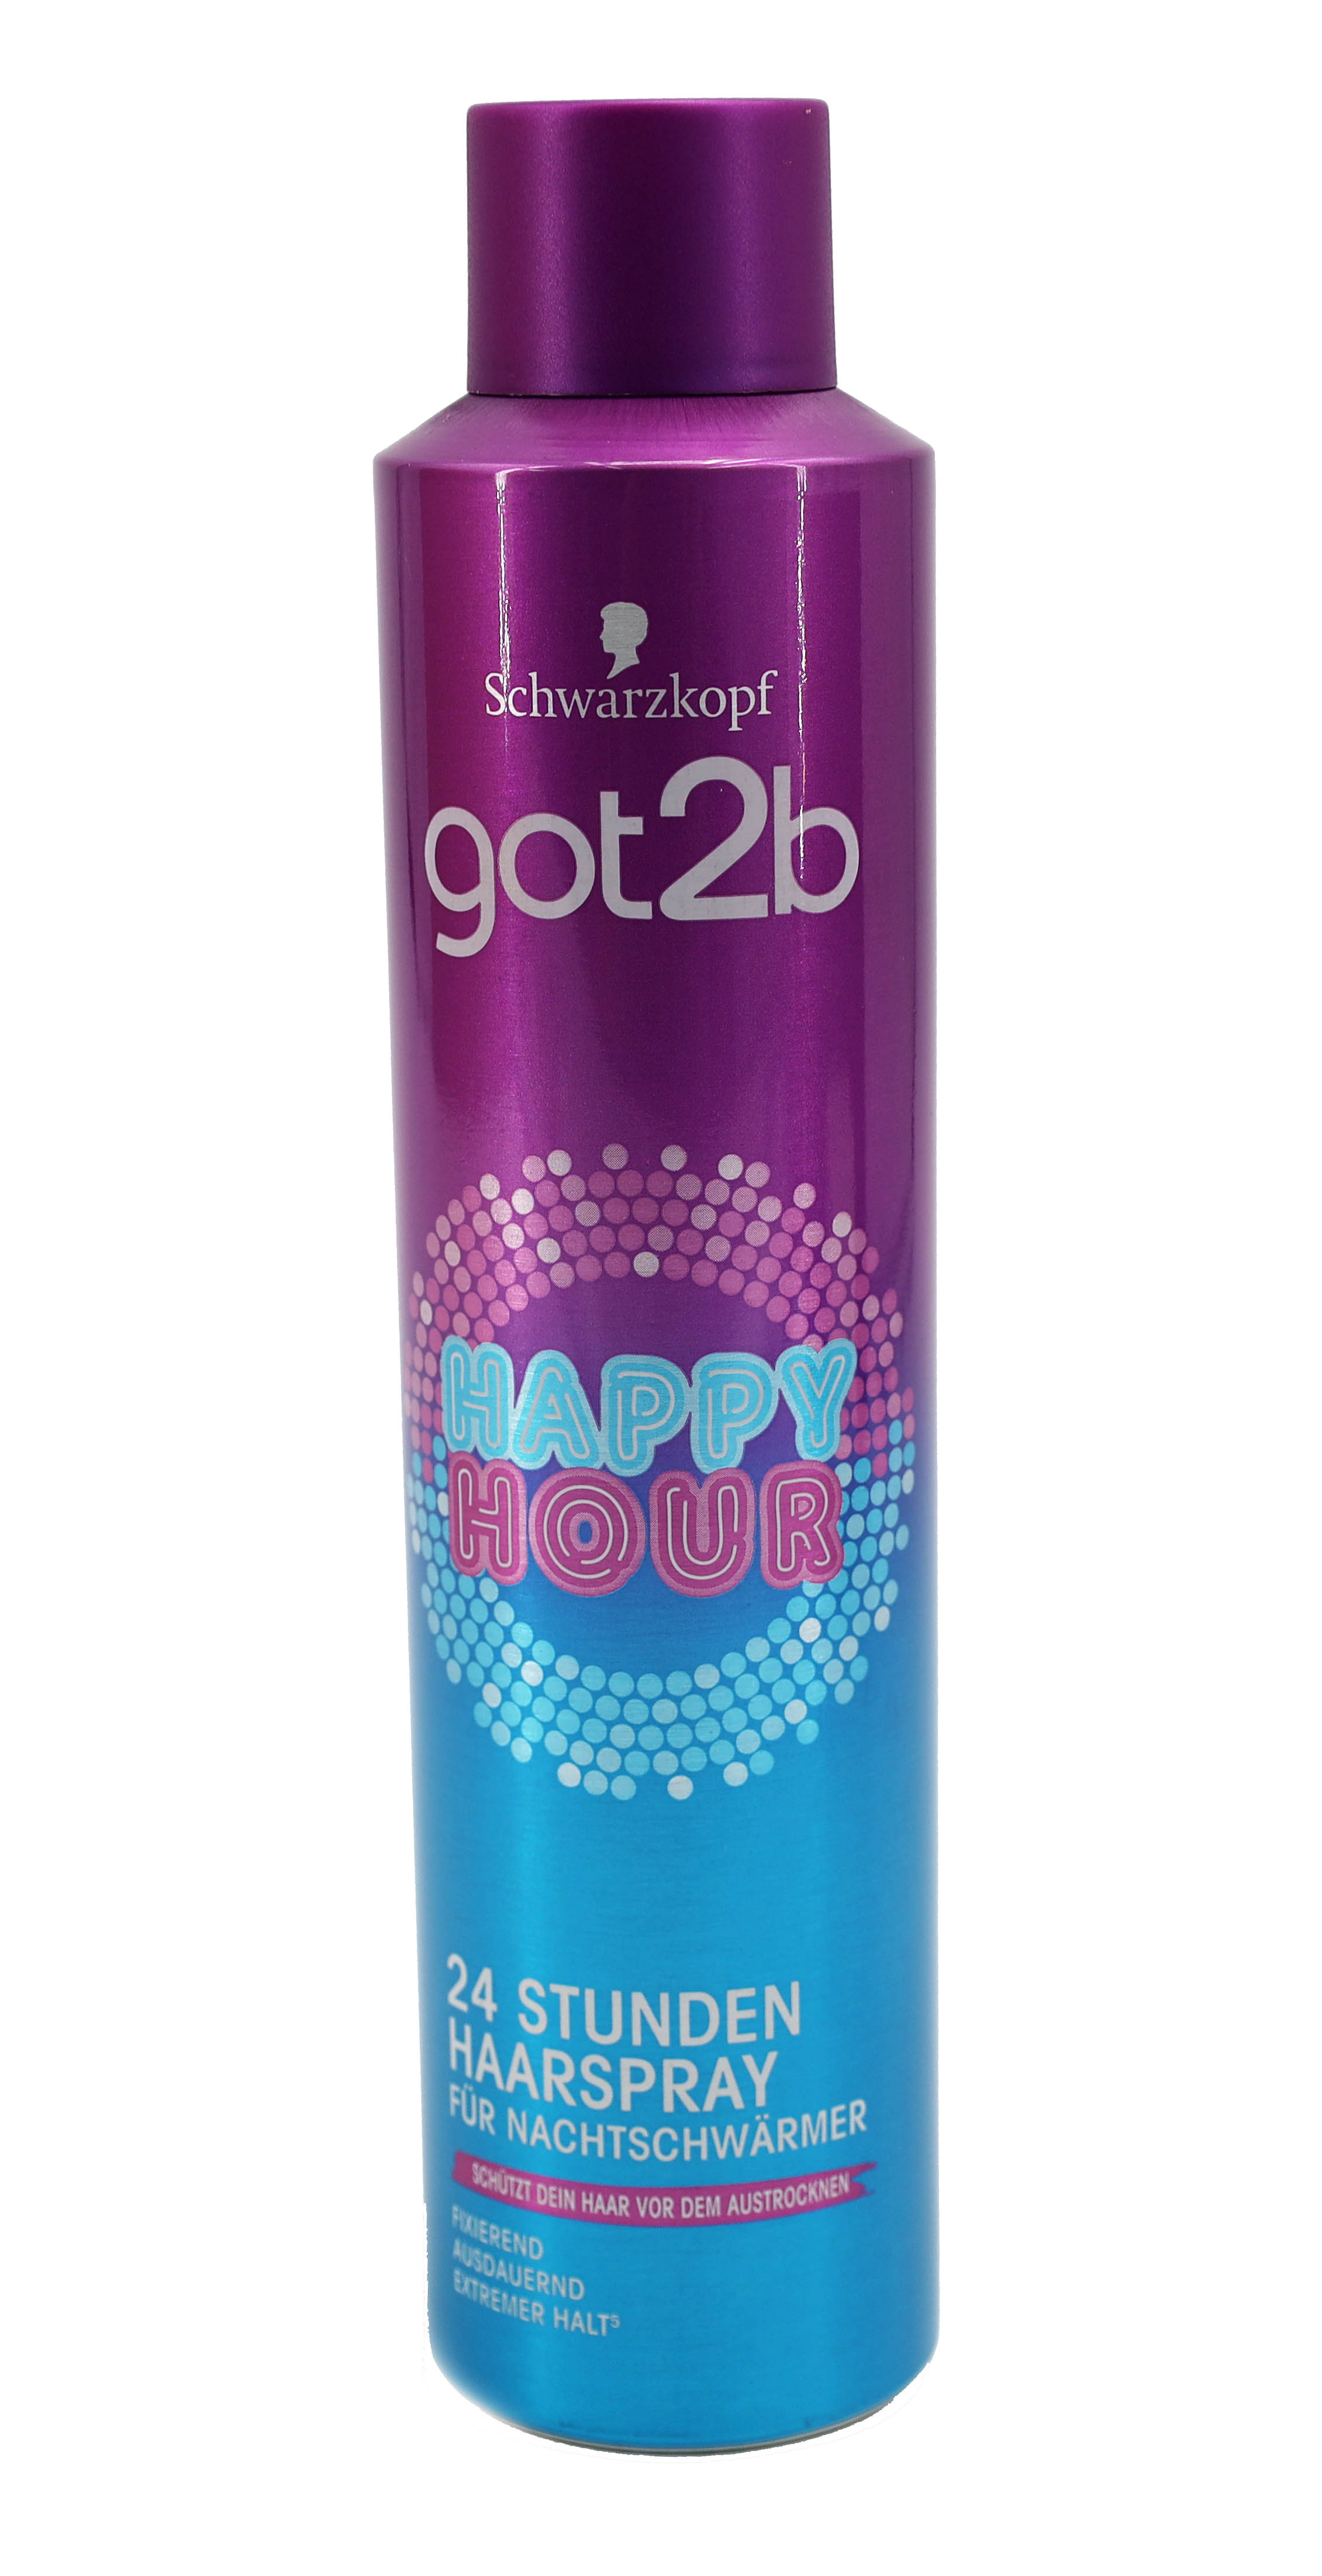 got2b Haarspray Happy Hour 24 Stunden Nachtschwärmer 300ml